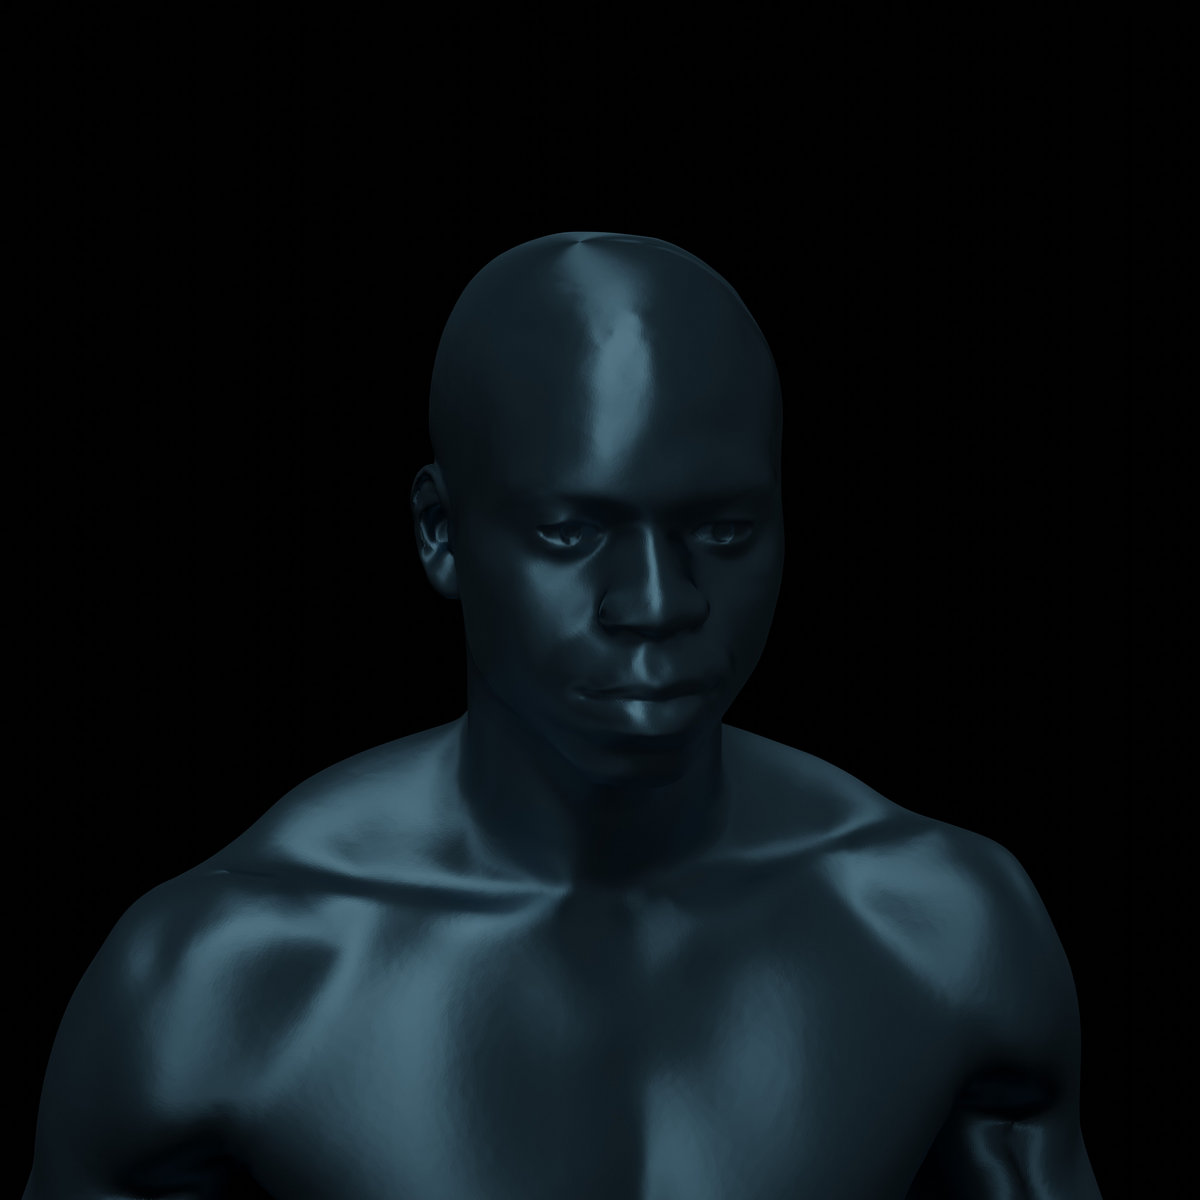 dark image of a person in the dark